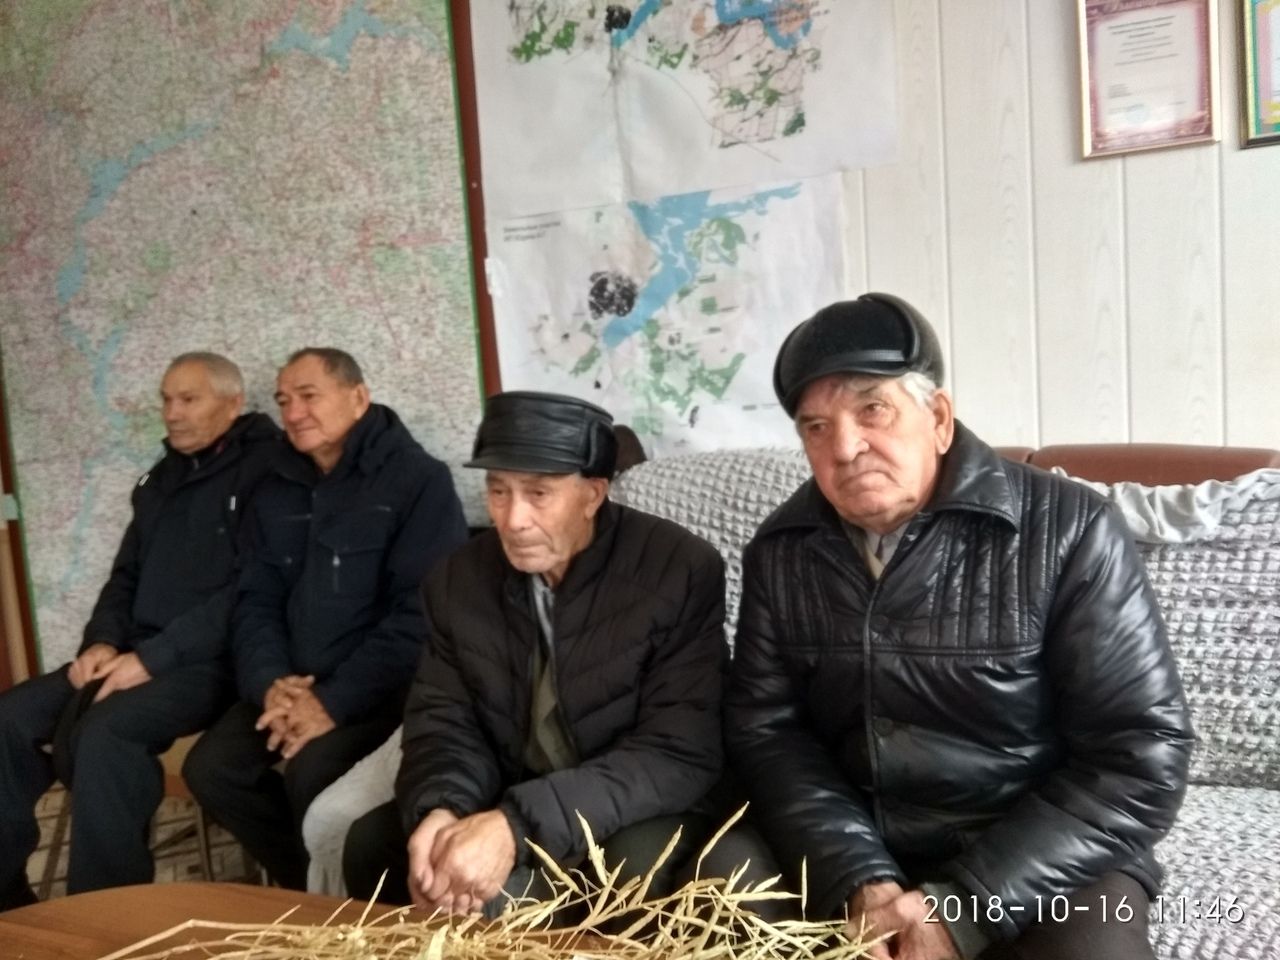 Работники бывшей сельхозтехники встретились сегодня на базе предприятия Алексея Юдина